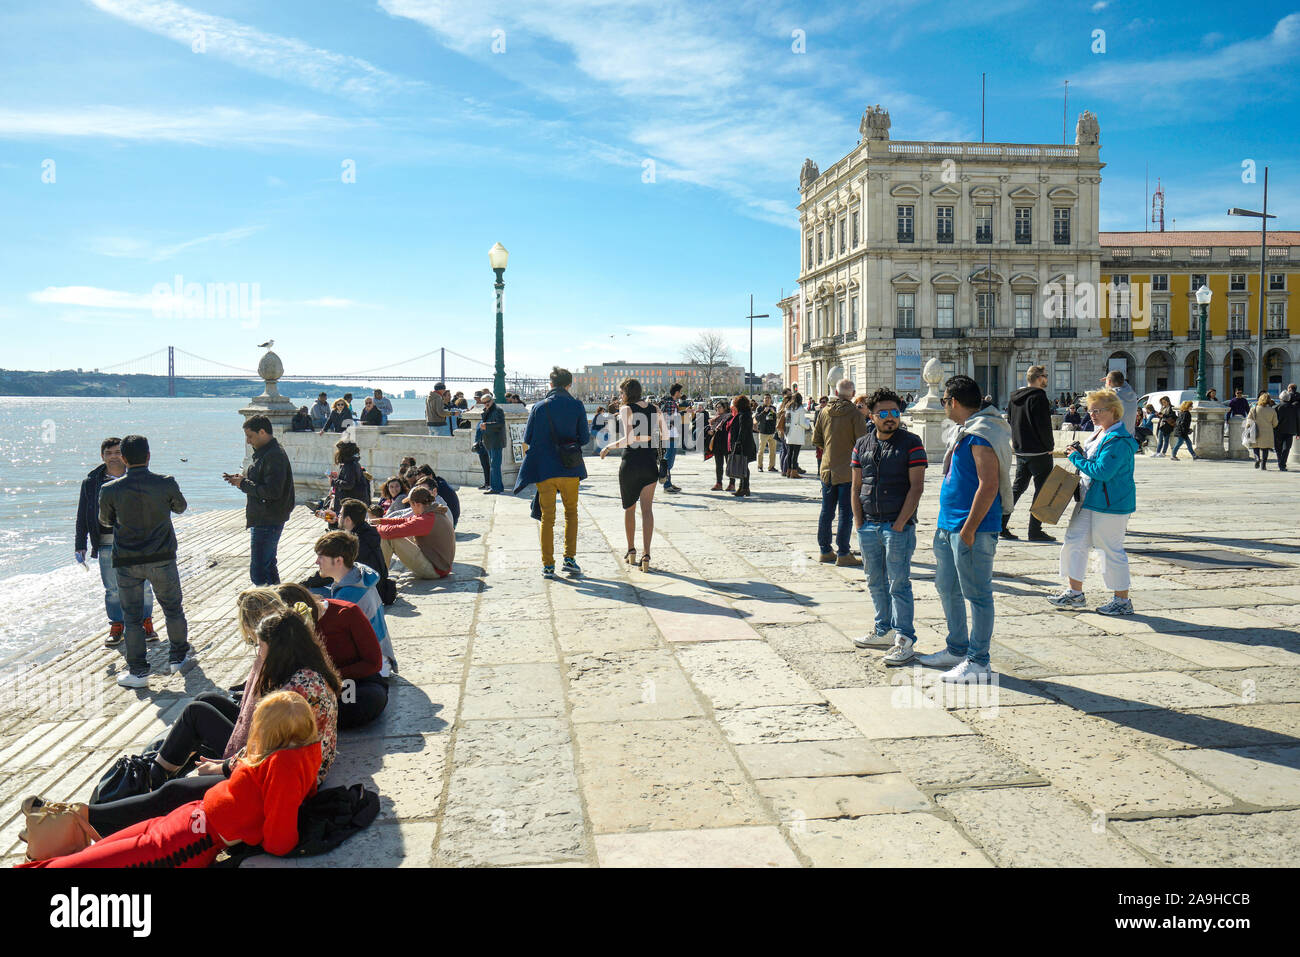 Europa, Portugal, Lisboa, Junge Leute sitzen an der Uferpromenade am Fluss Tejo Foto de stock